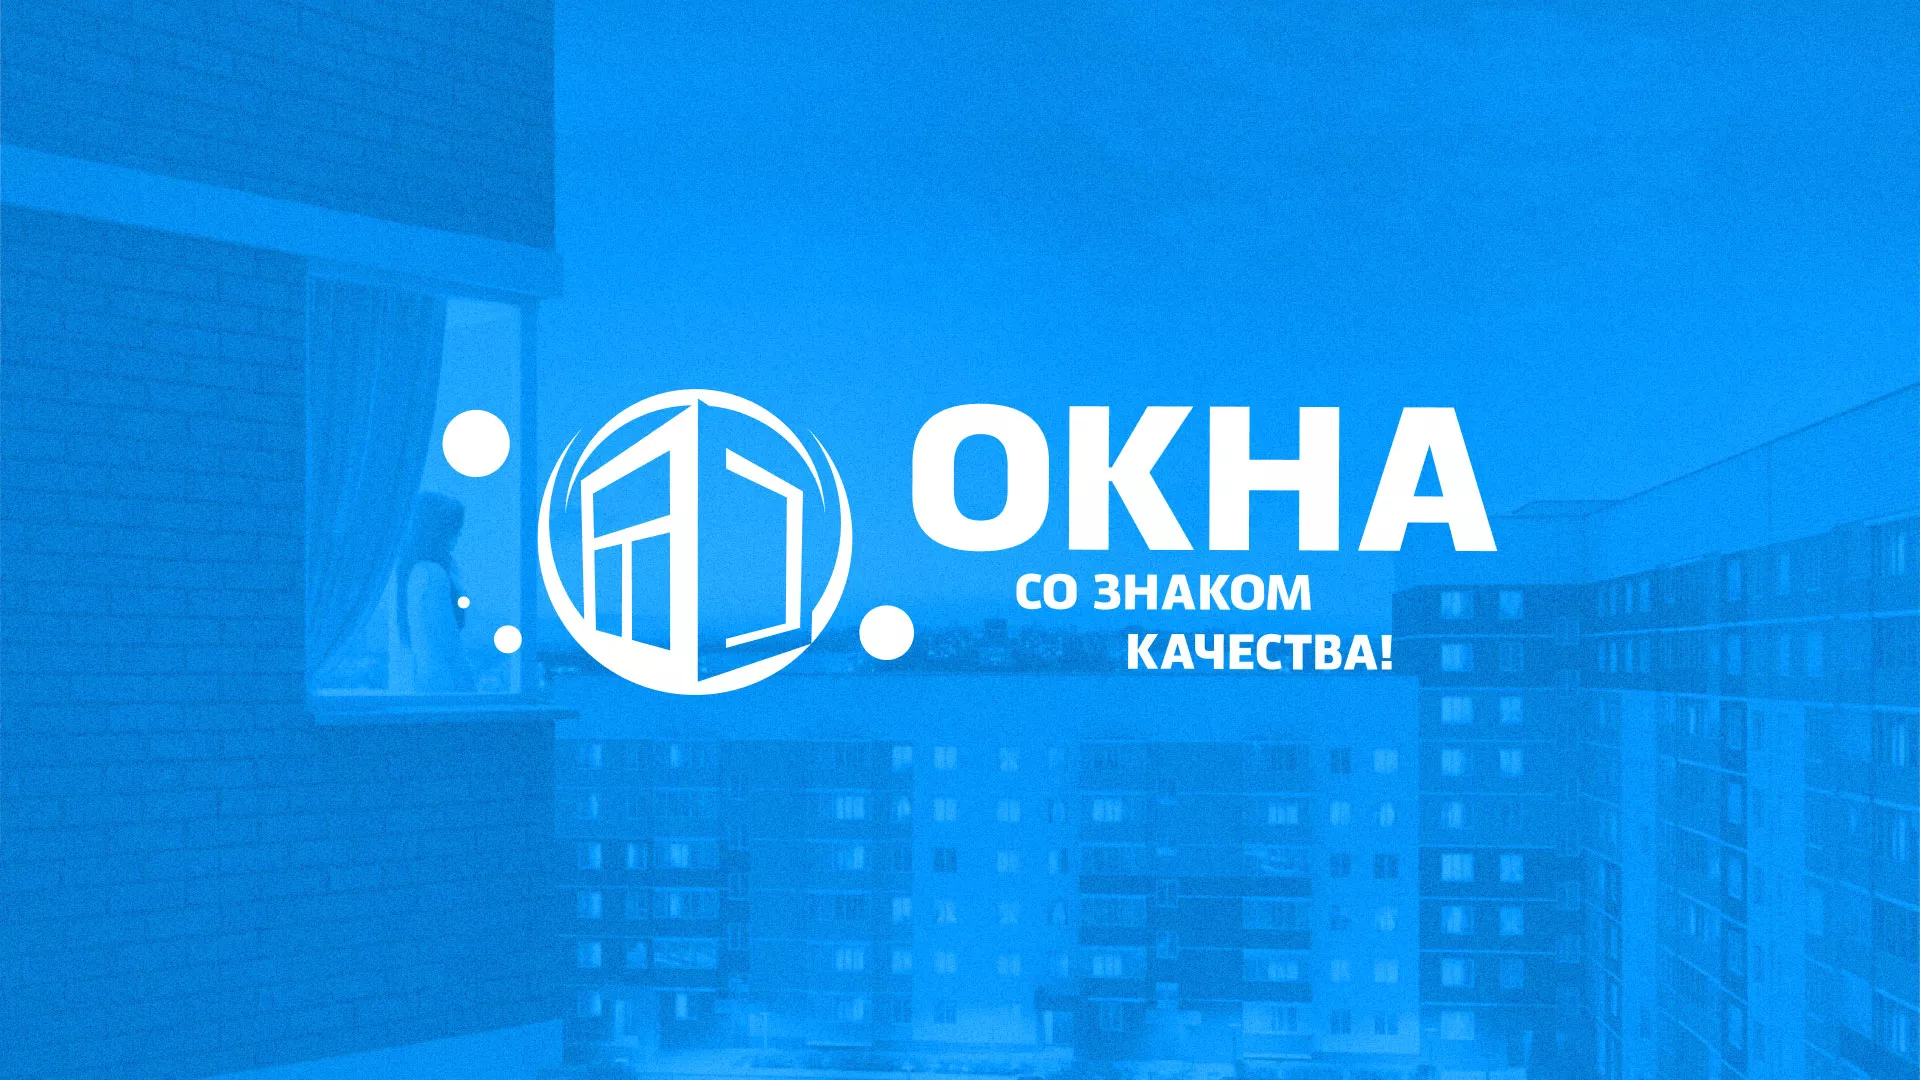 Создание сайта компании «Окна ВИДО» в Мариинске